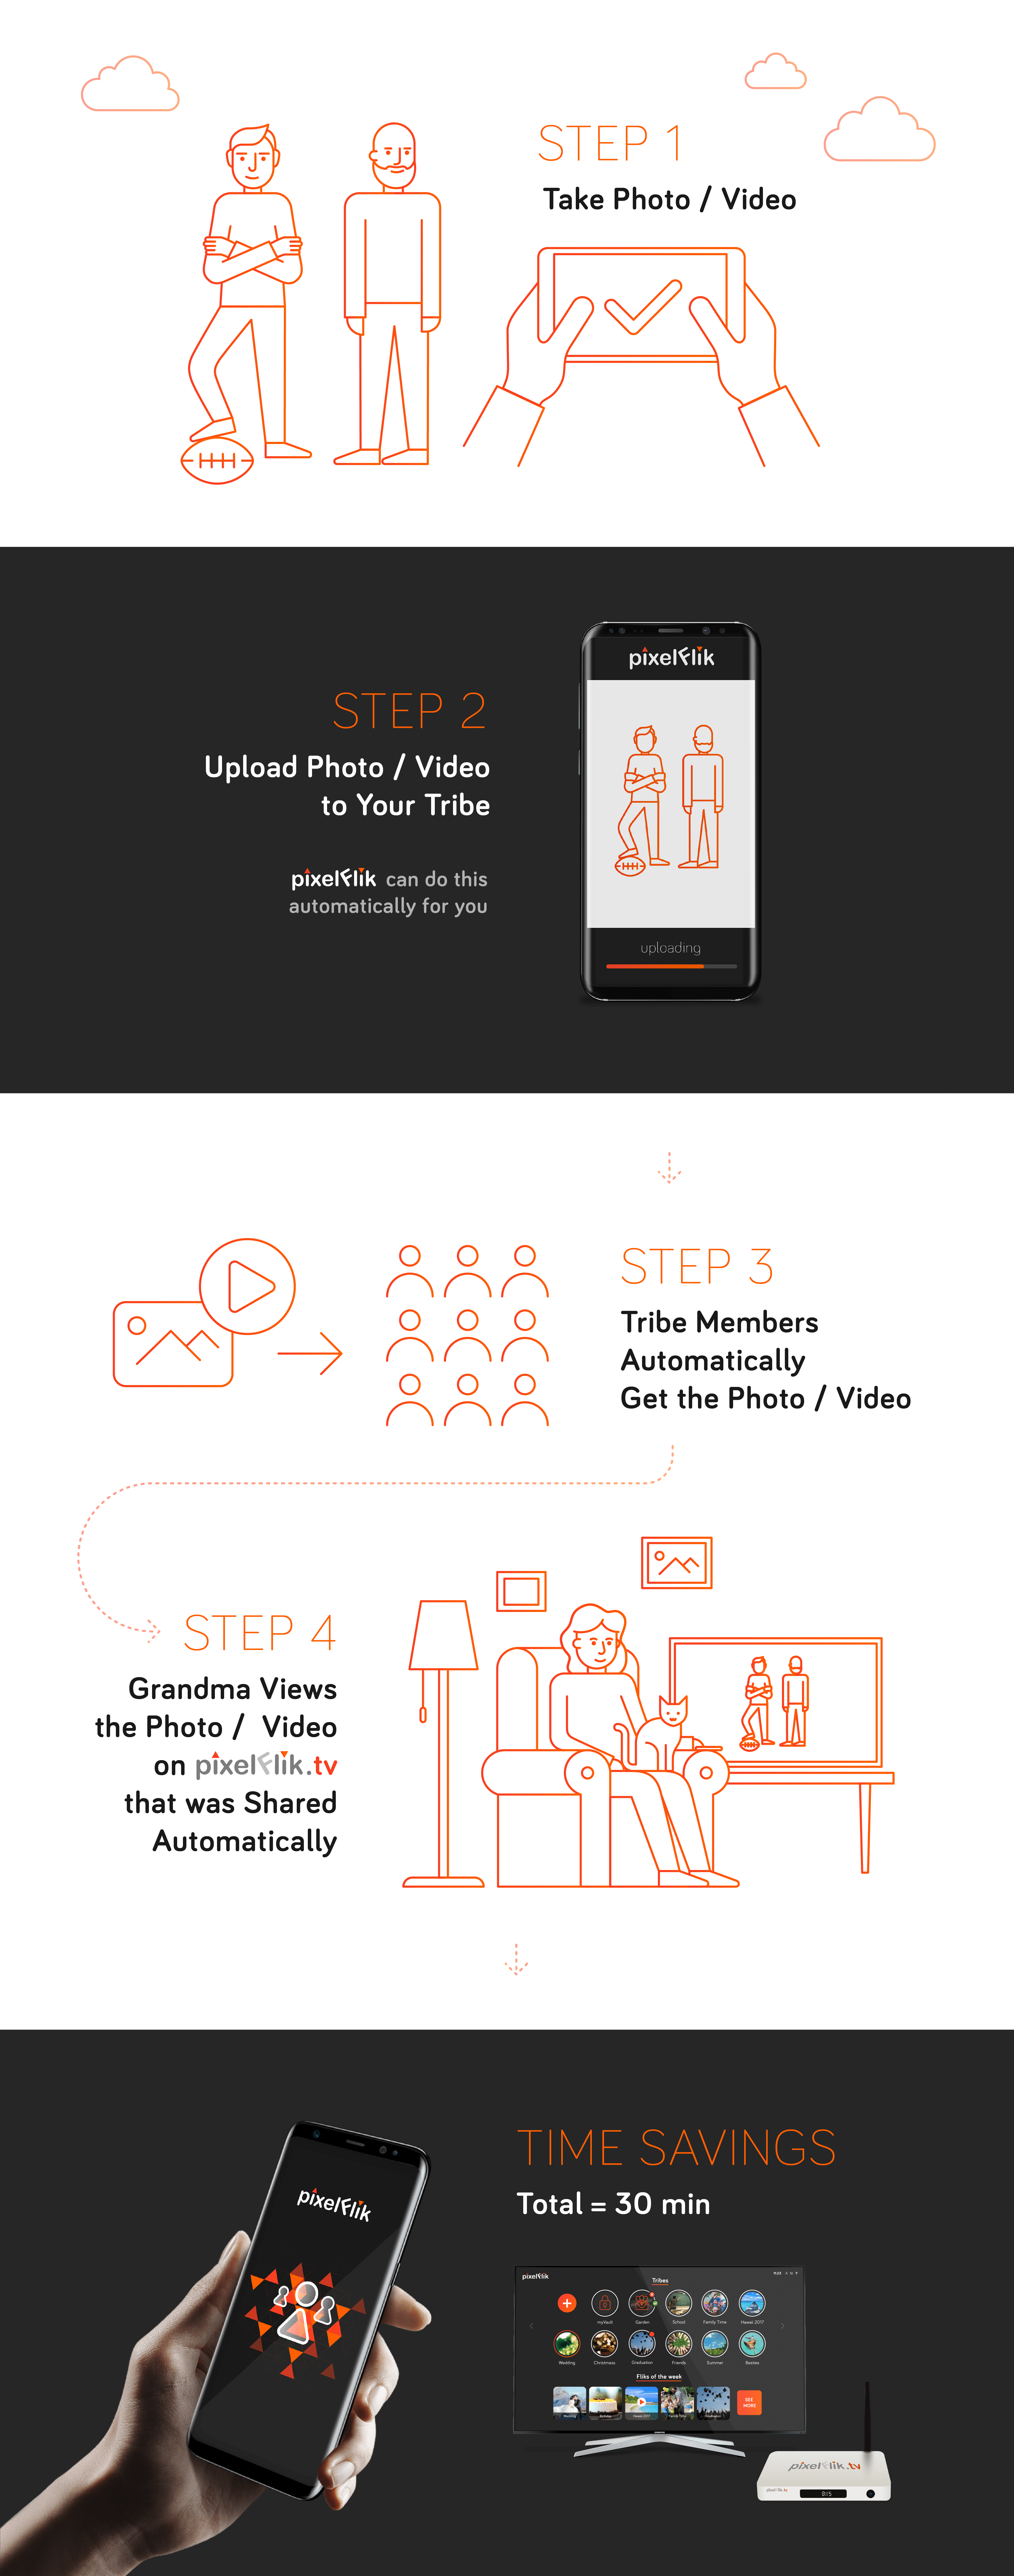 PixelFlik - How It Works Infographic